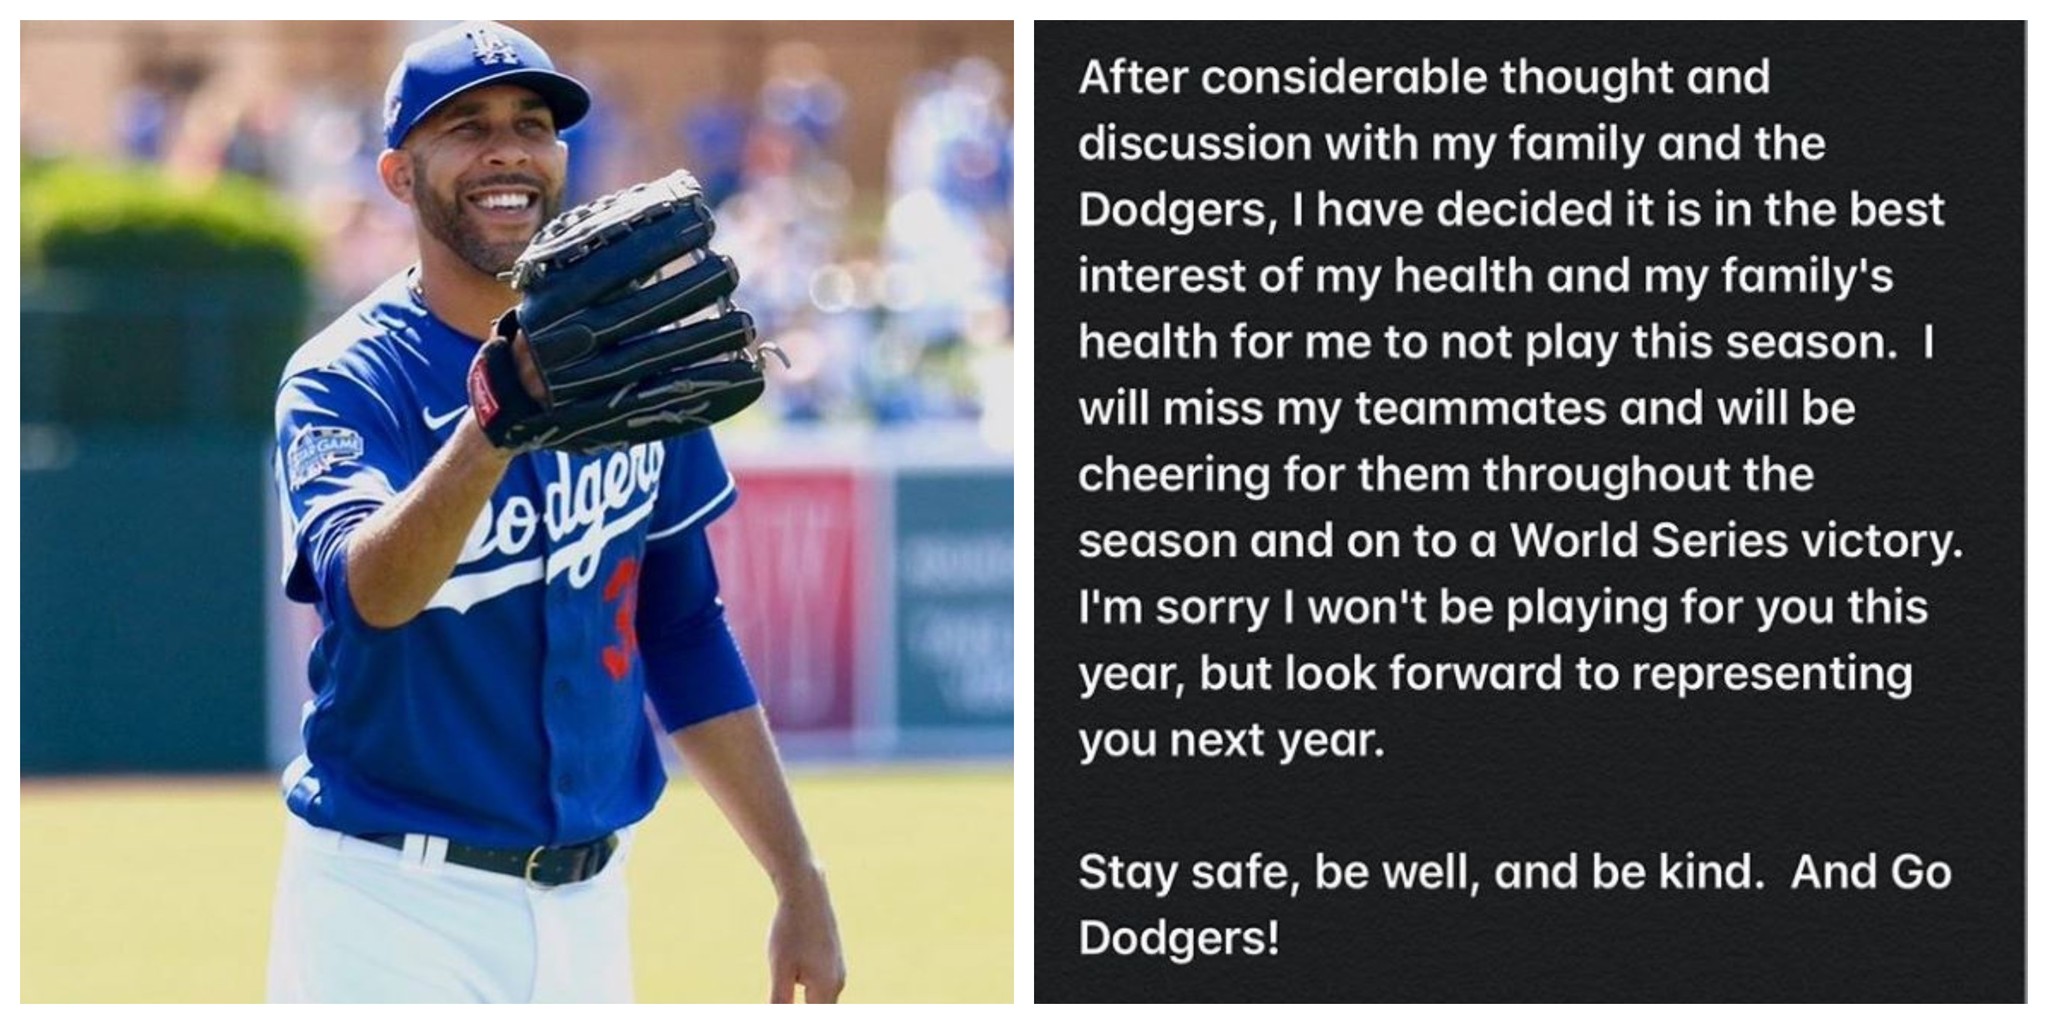 A la izquierda, David Price, lanzador de los Dodgers; a la derecha, su mensaje en el que anunciaba su renuncia.